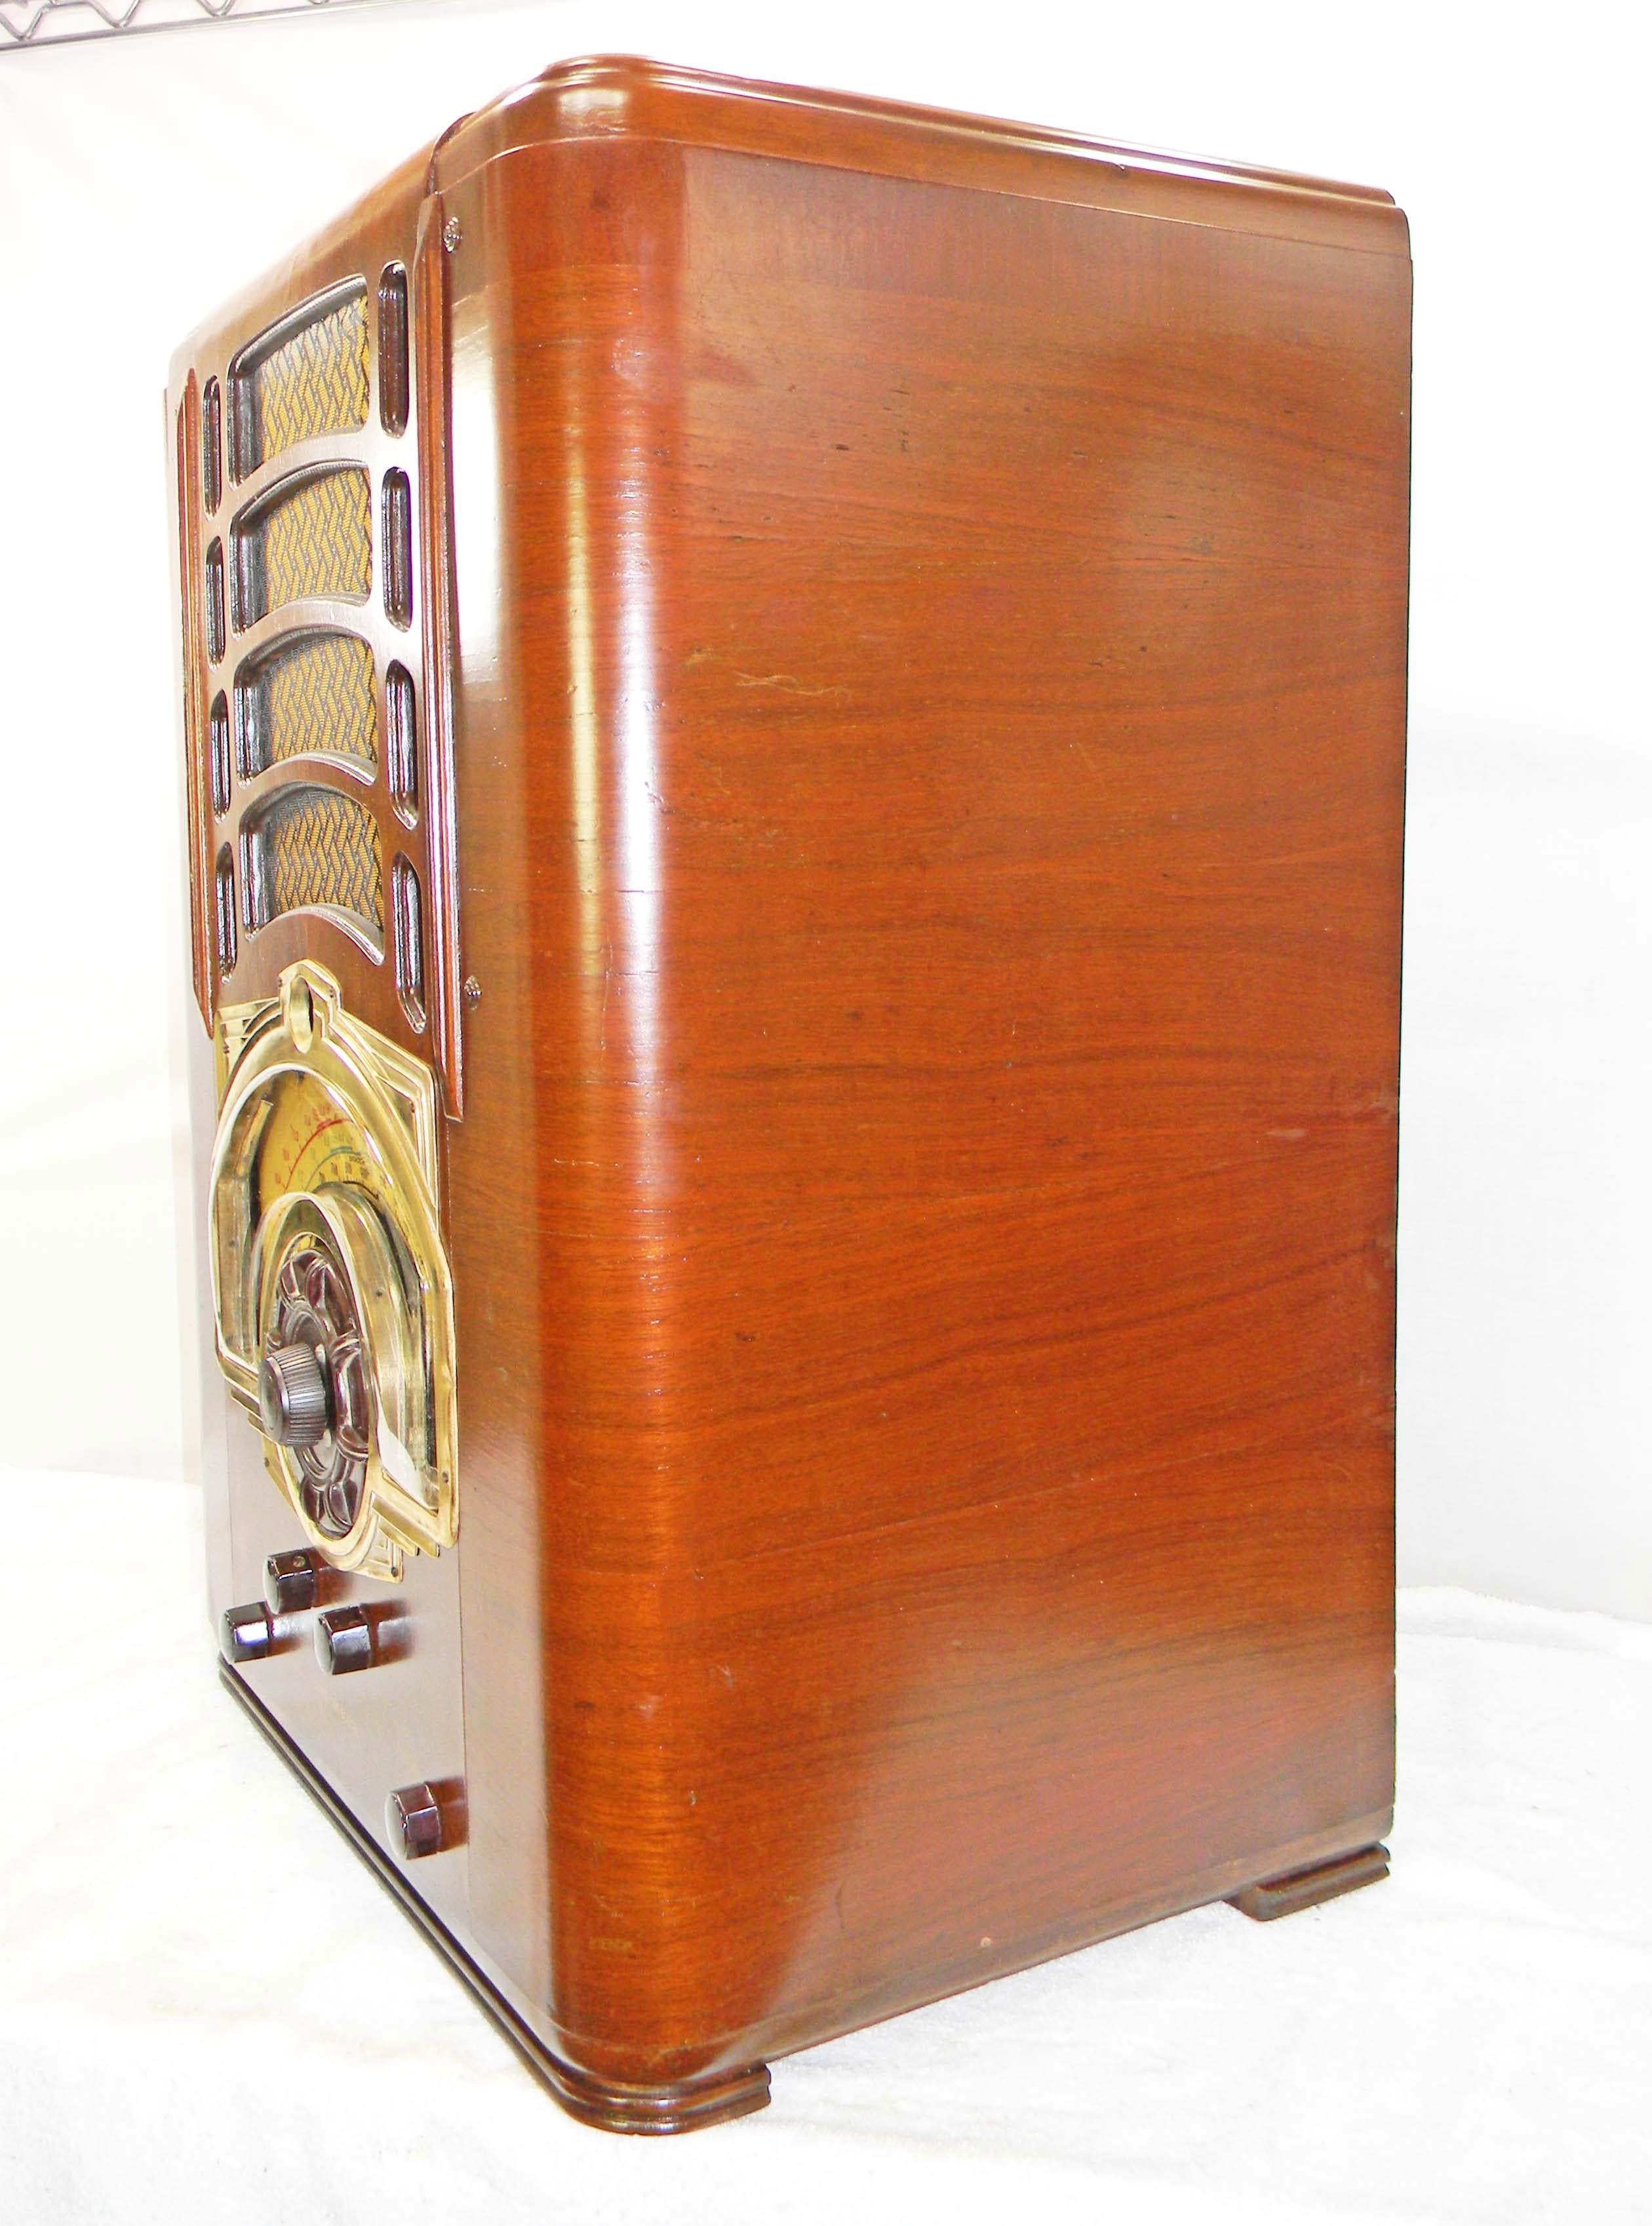 Amerikanisches Bosch Modell 854T (1939) Am/Kurzwelle mit eingebauter Miniklinke. Das größte hergestellte Tischradio ist ein ebenso feines Radio wie es groß ist. Das Radio ist ein Modell mit zehn Röhren, das sowohl Amateurfunk als auch Kurzwelle